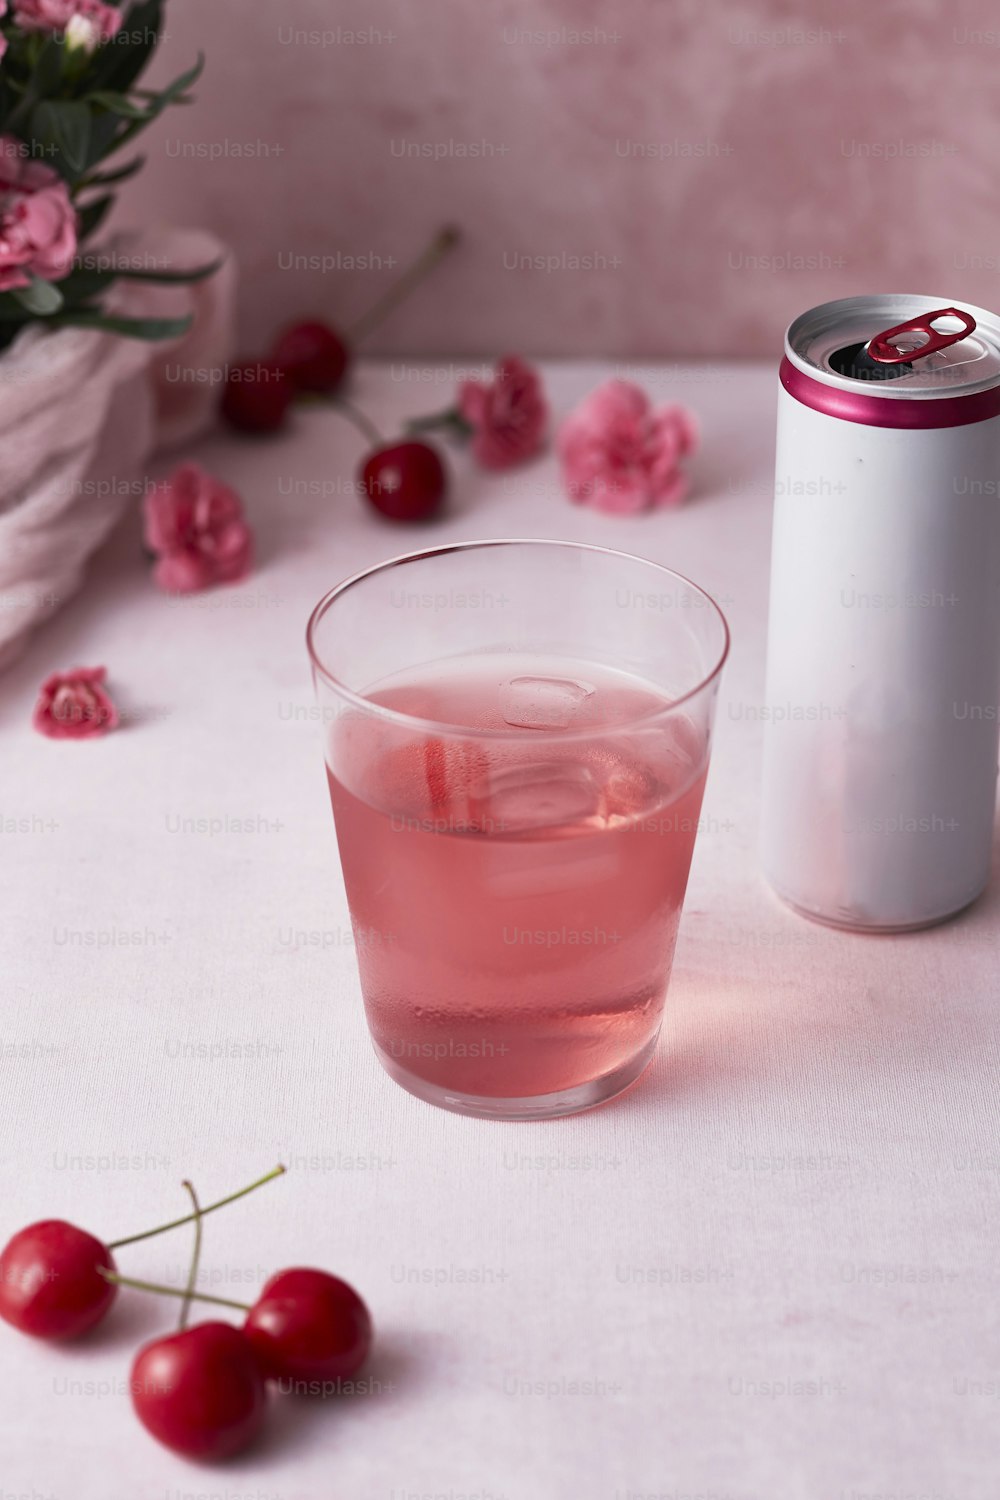 Un bicchiere di liquido rosa accanto a una lattina di soda